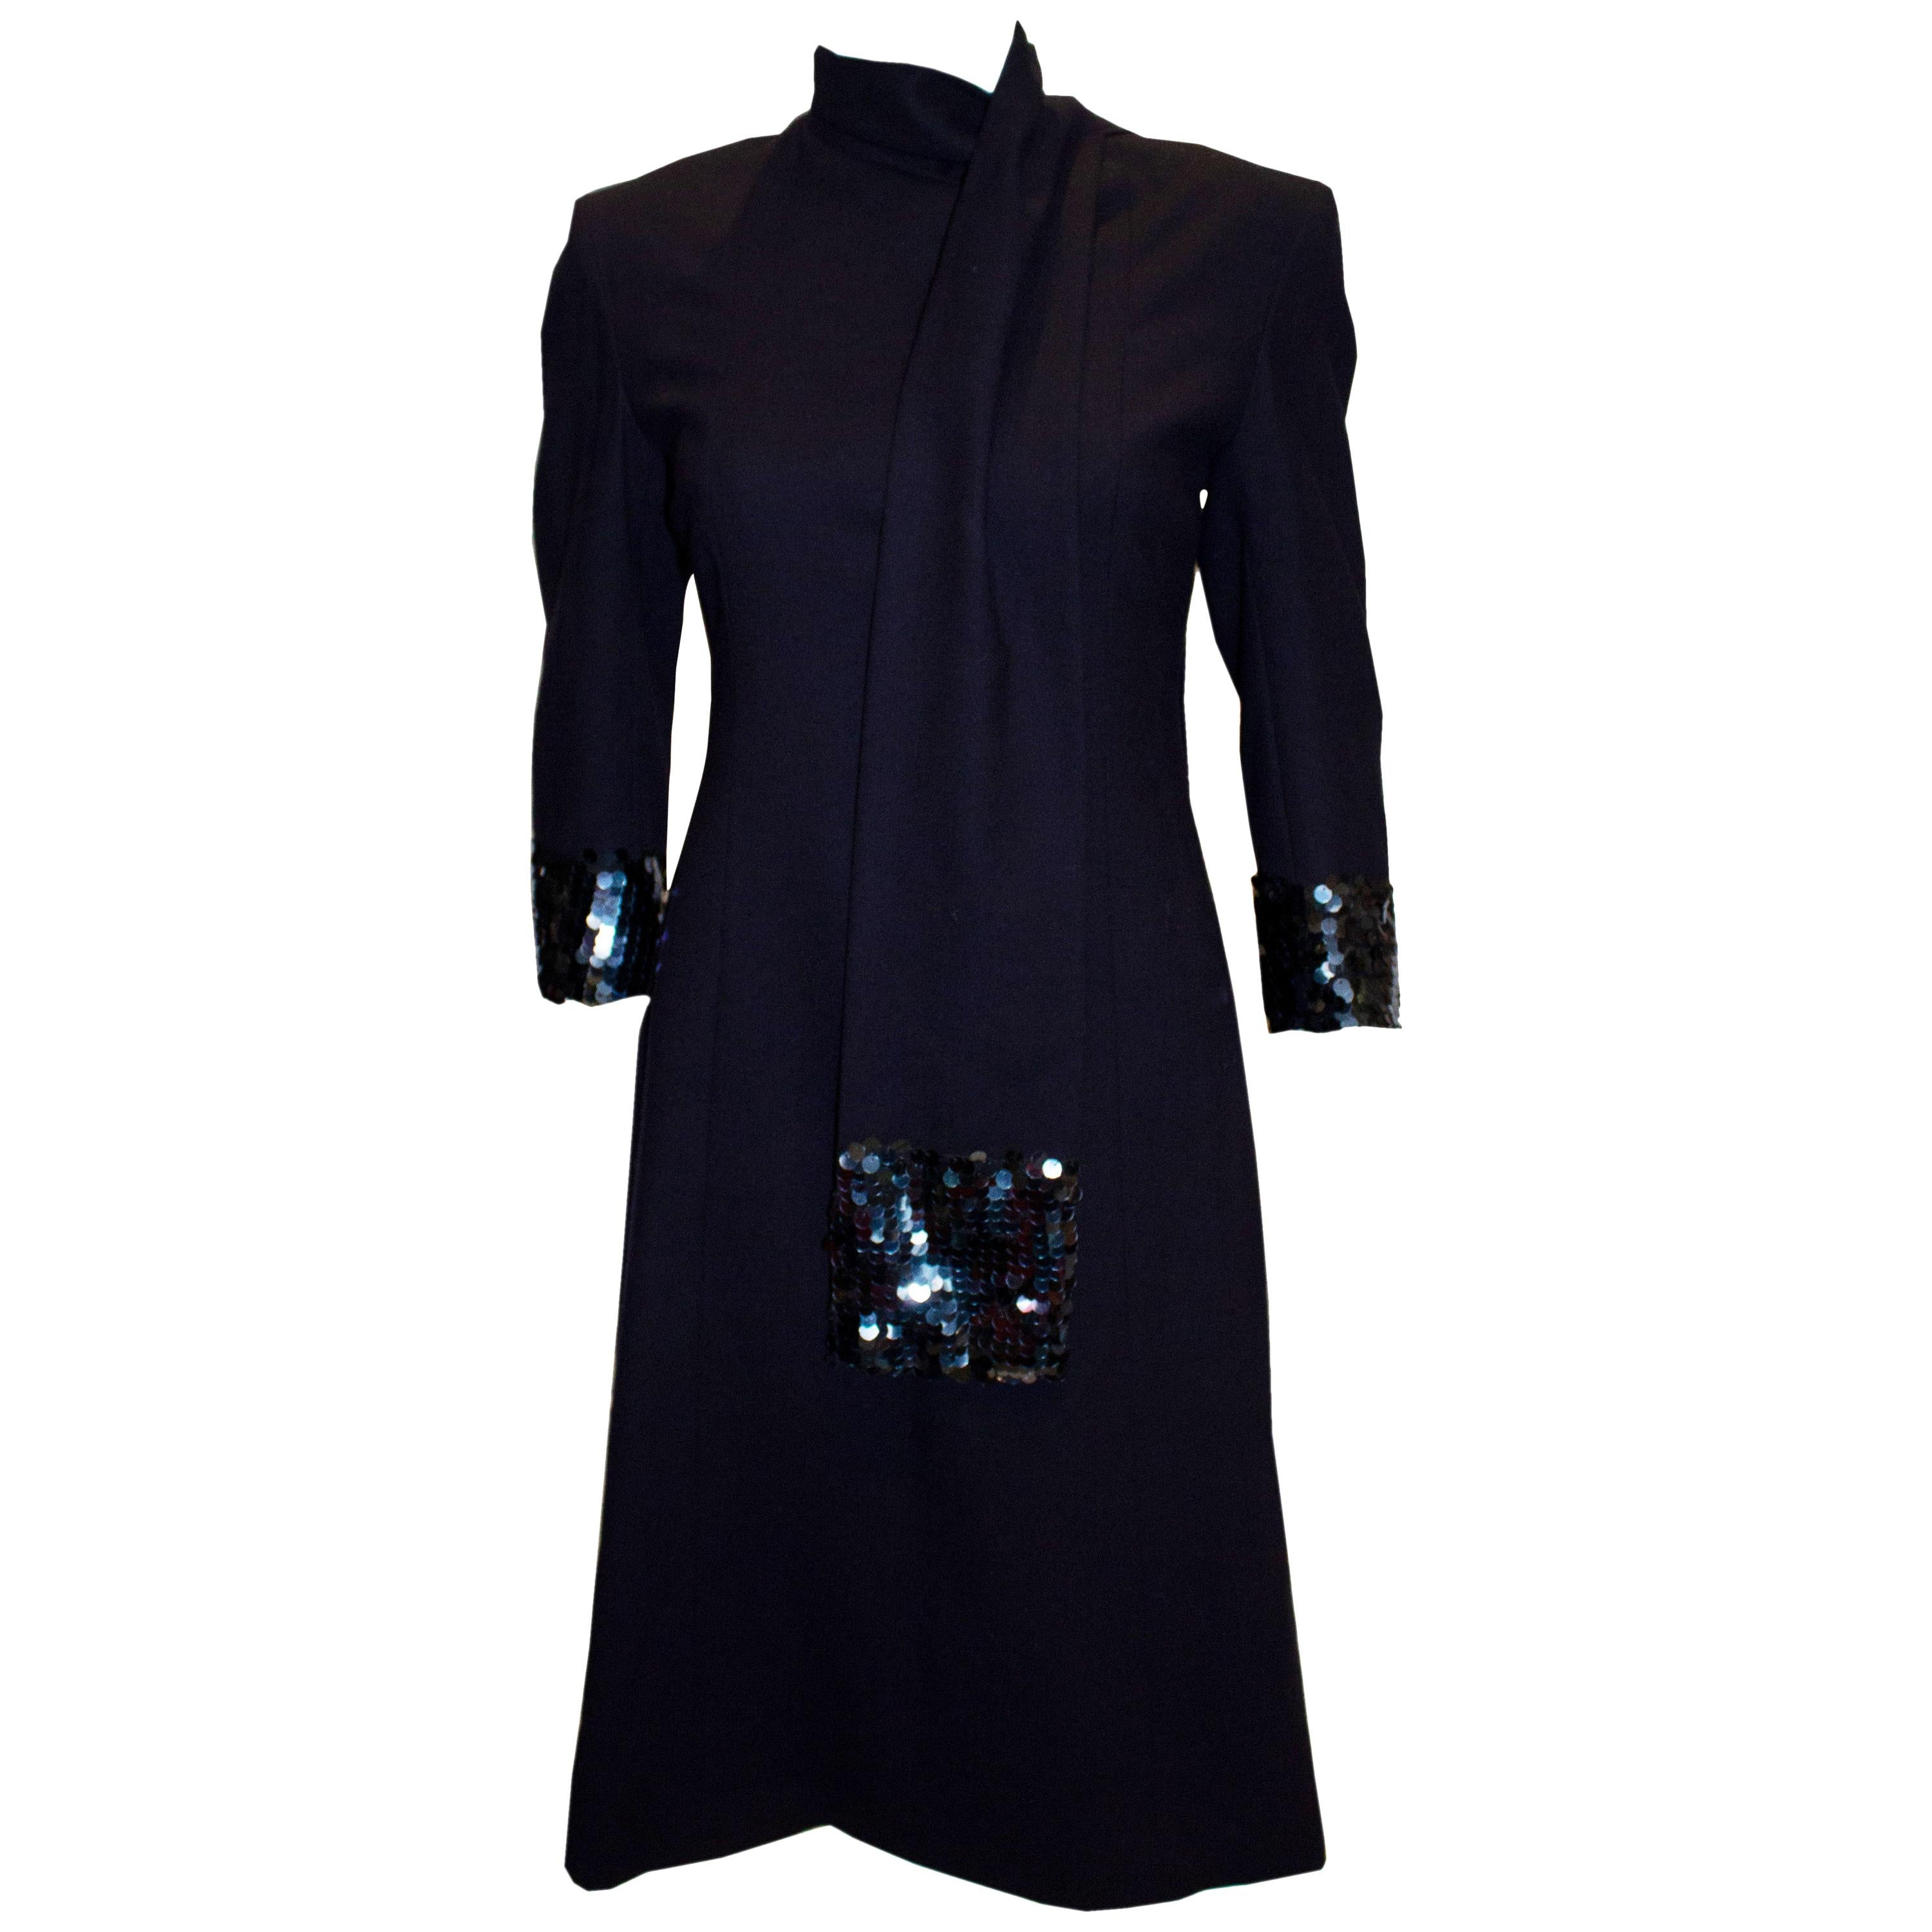 Marineblaues Kleid und Schal mit Pailletten-Detail